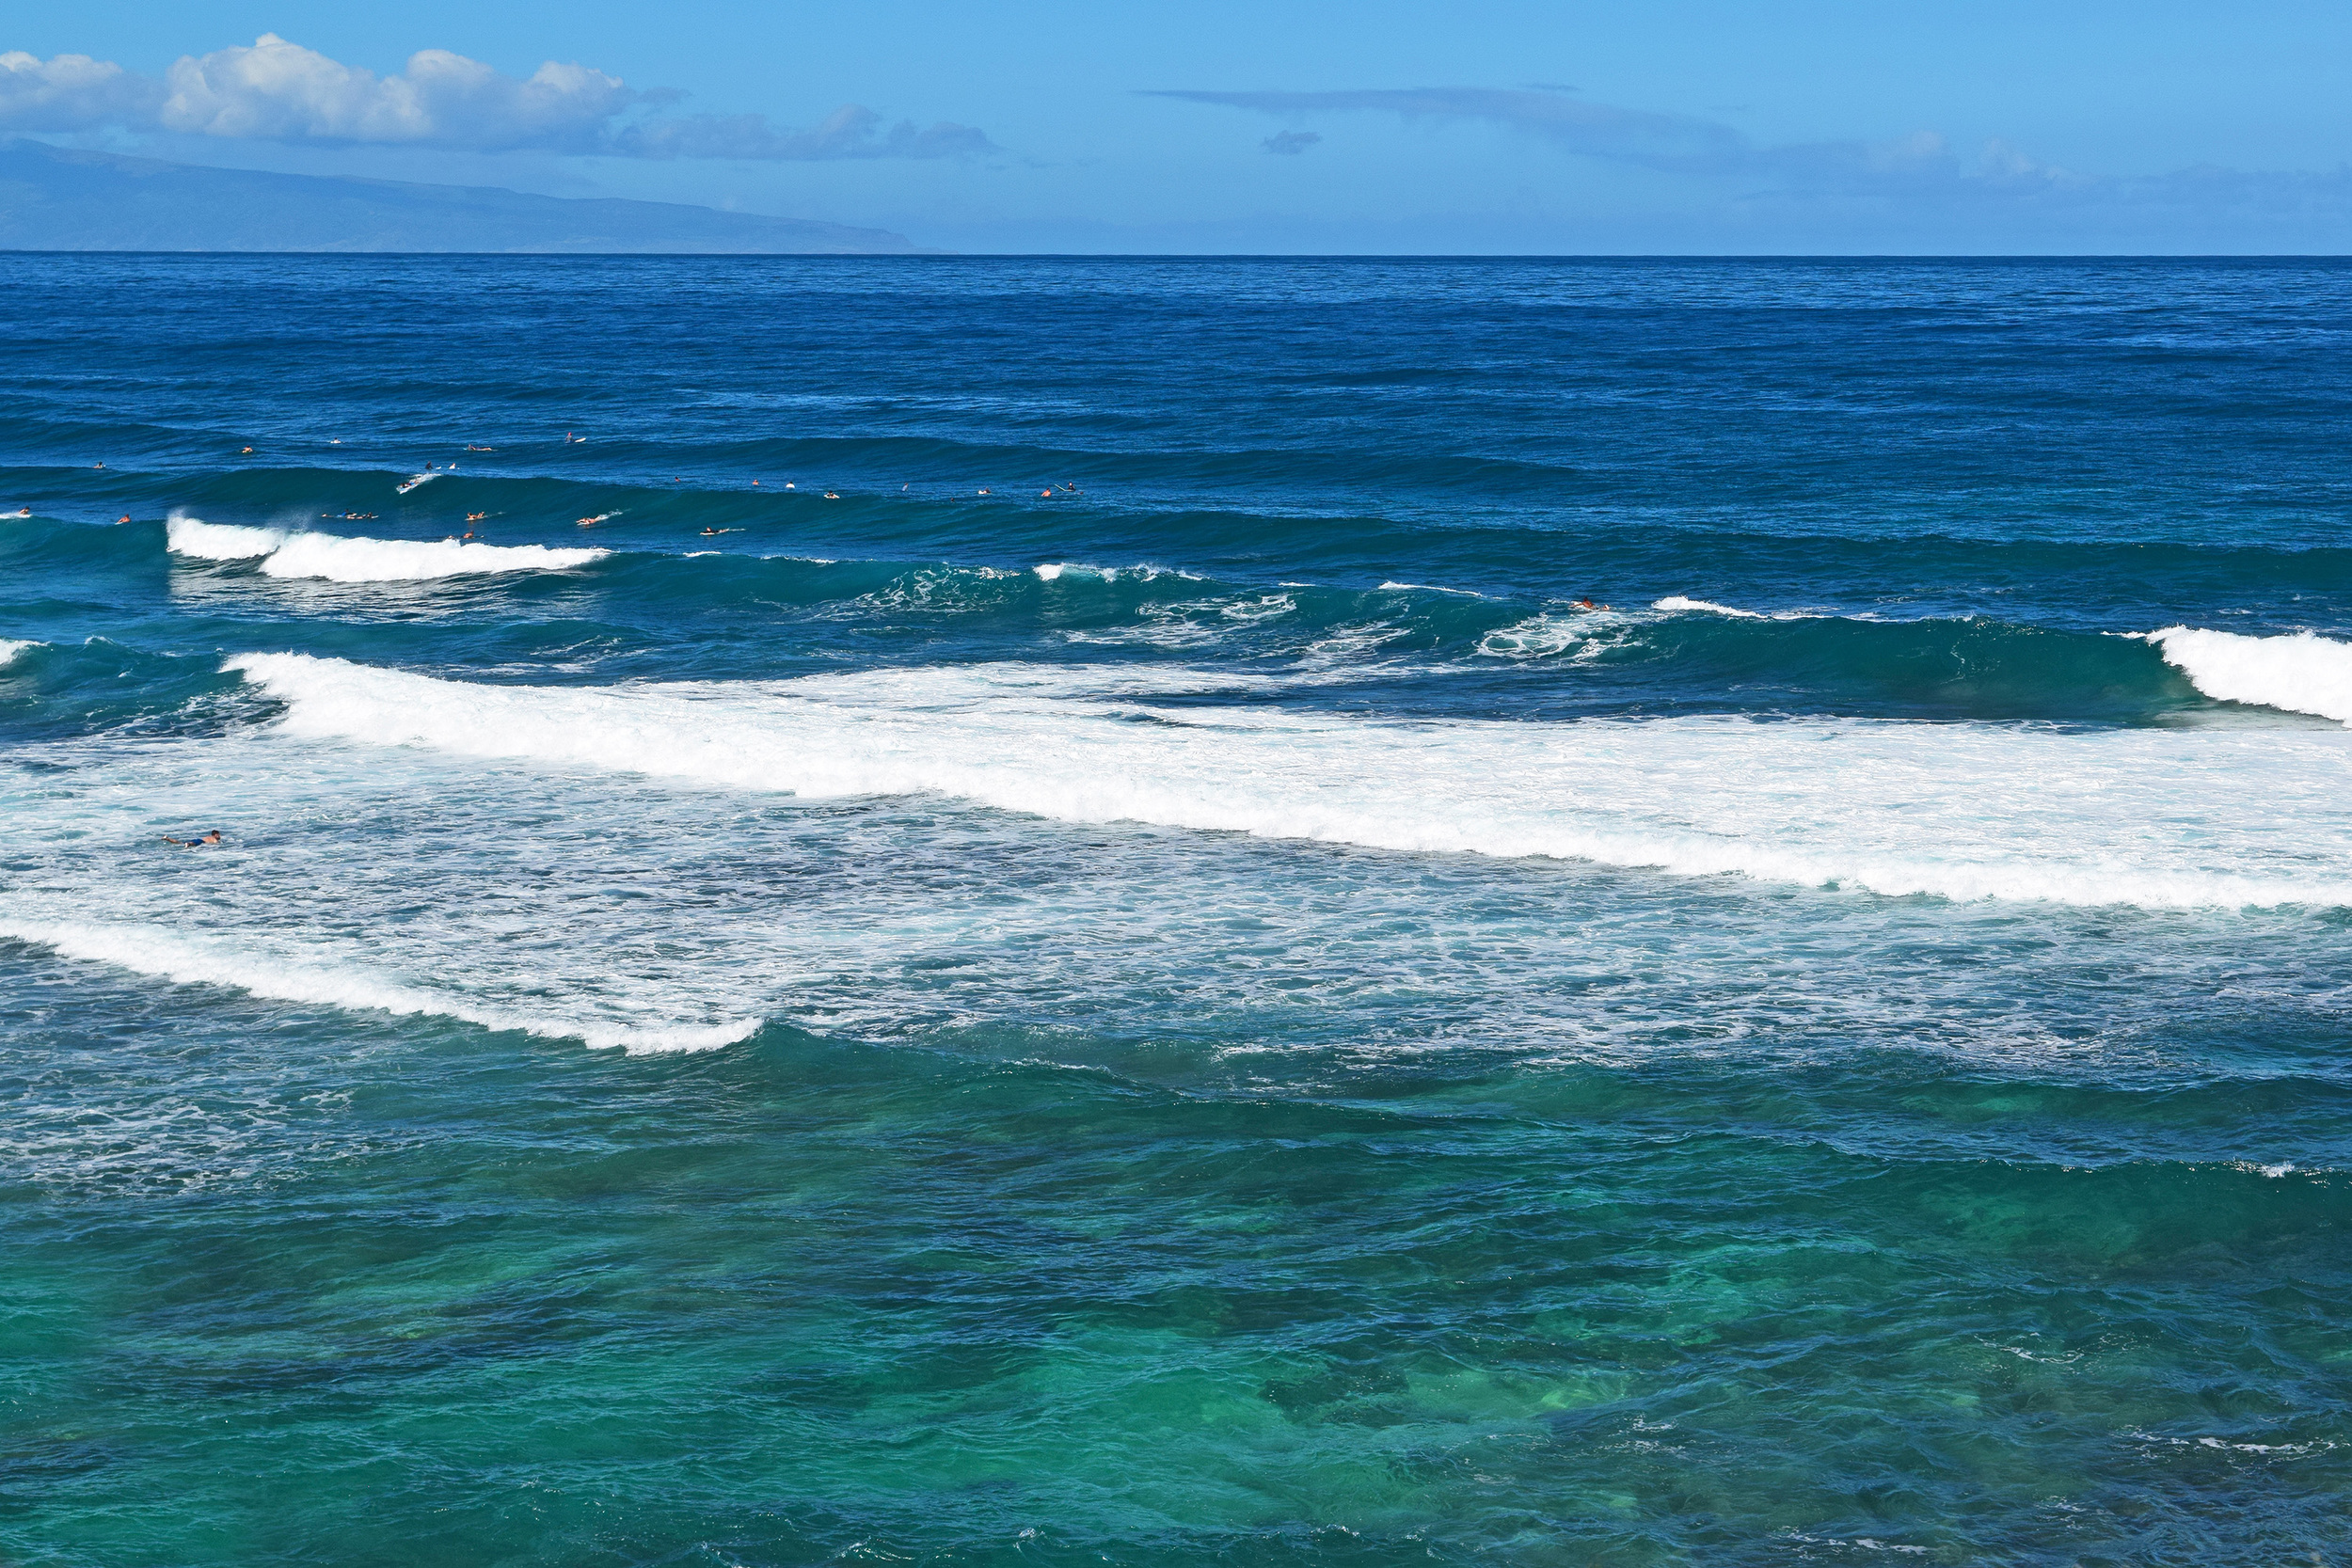  image of ocean waves 